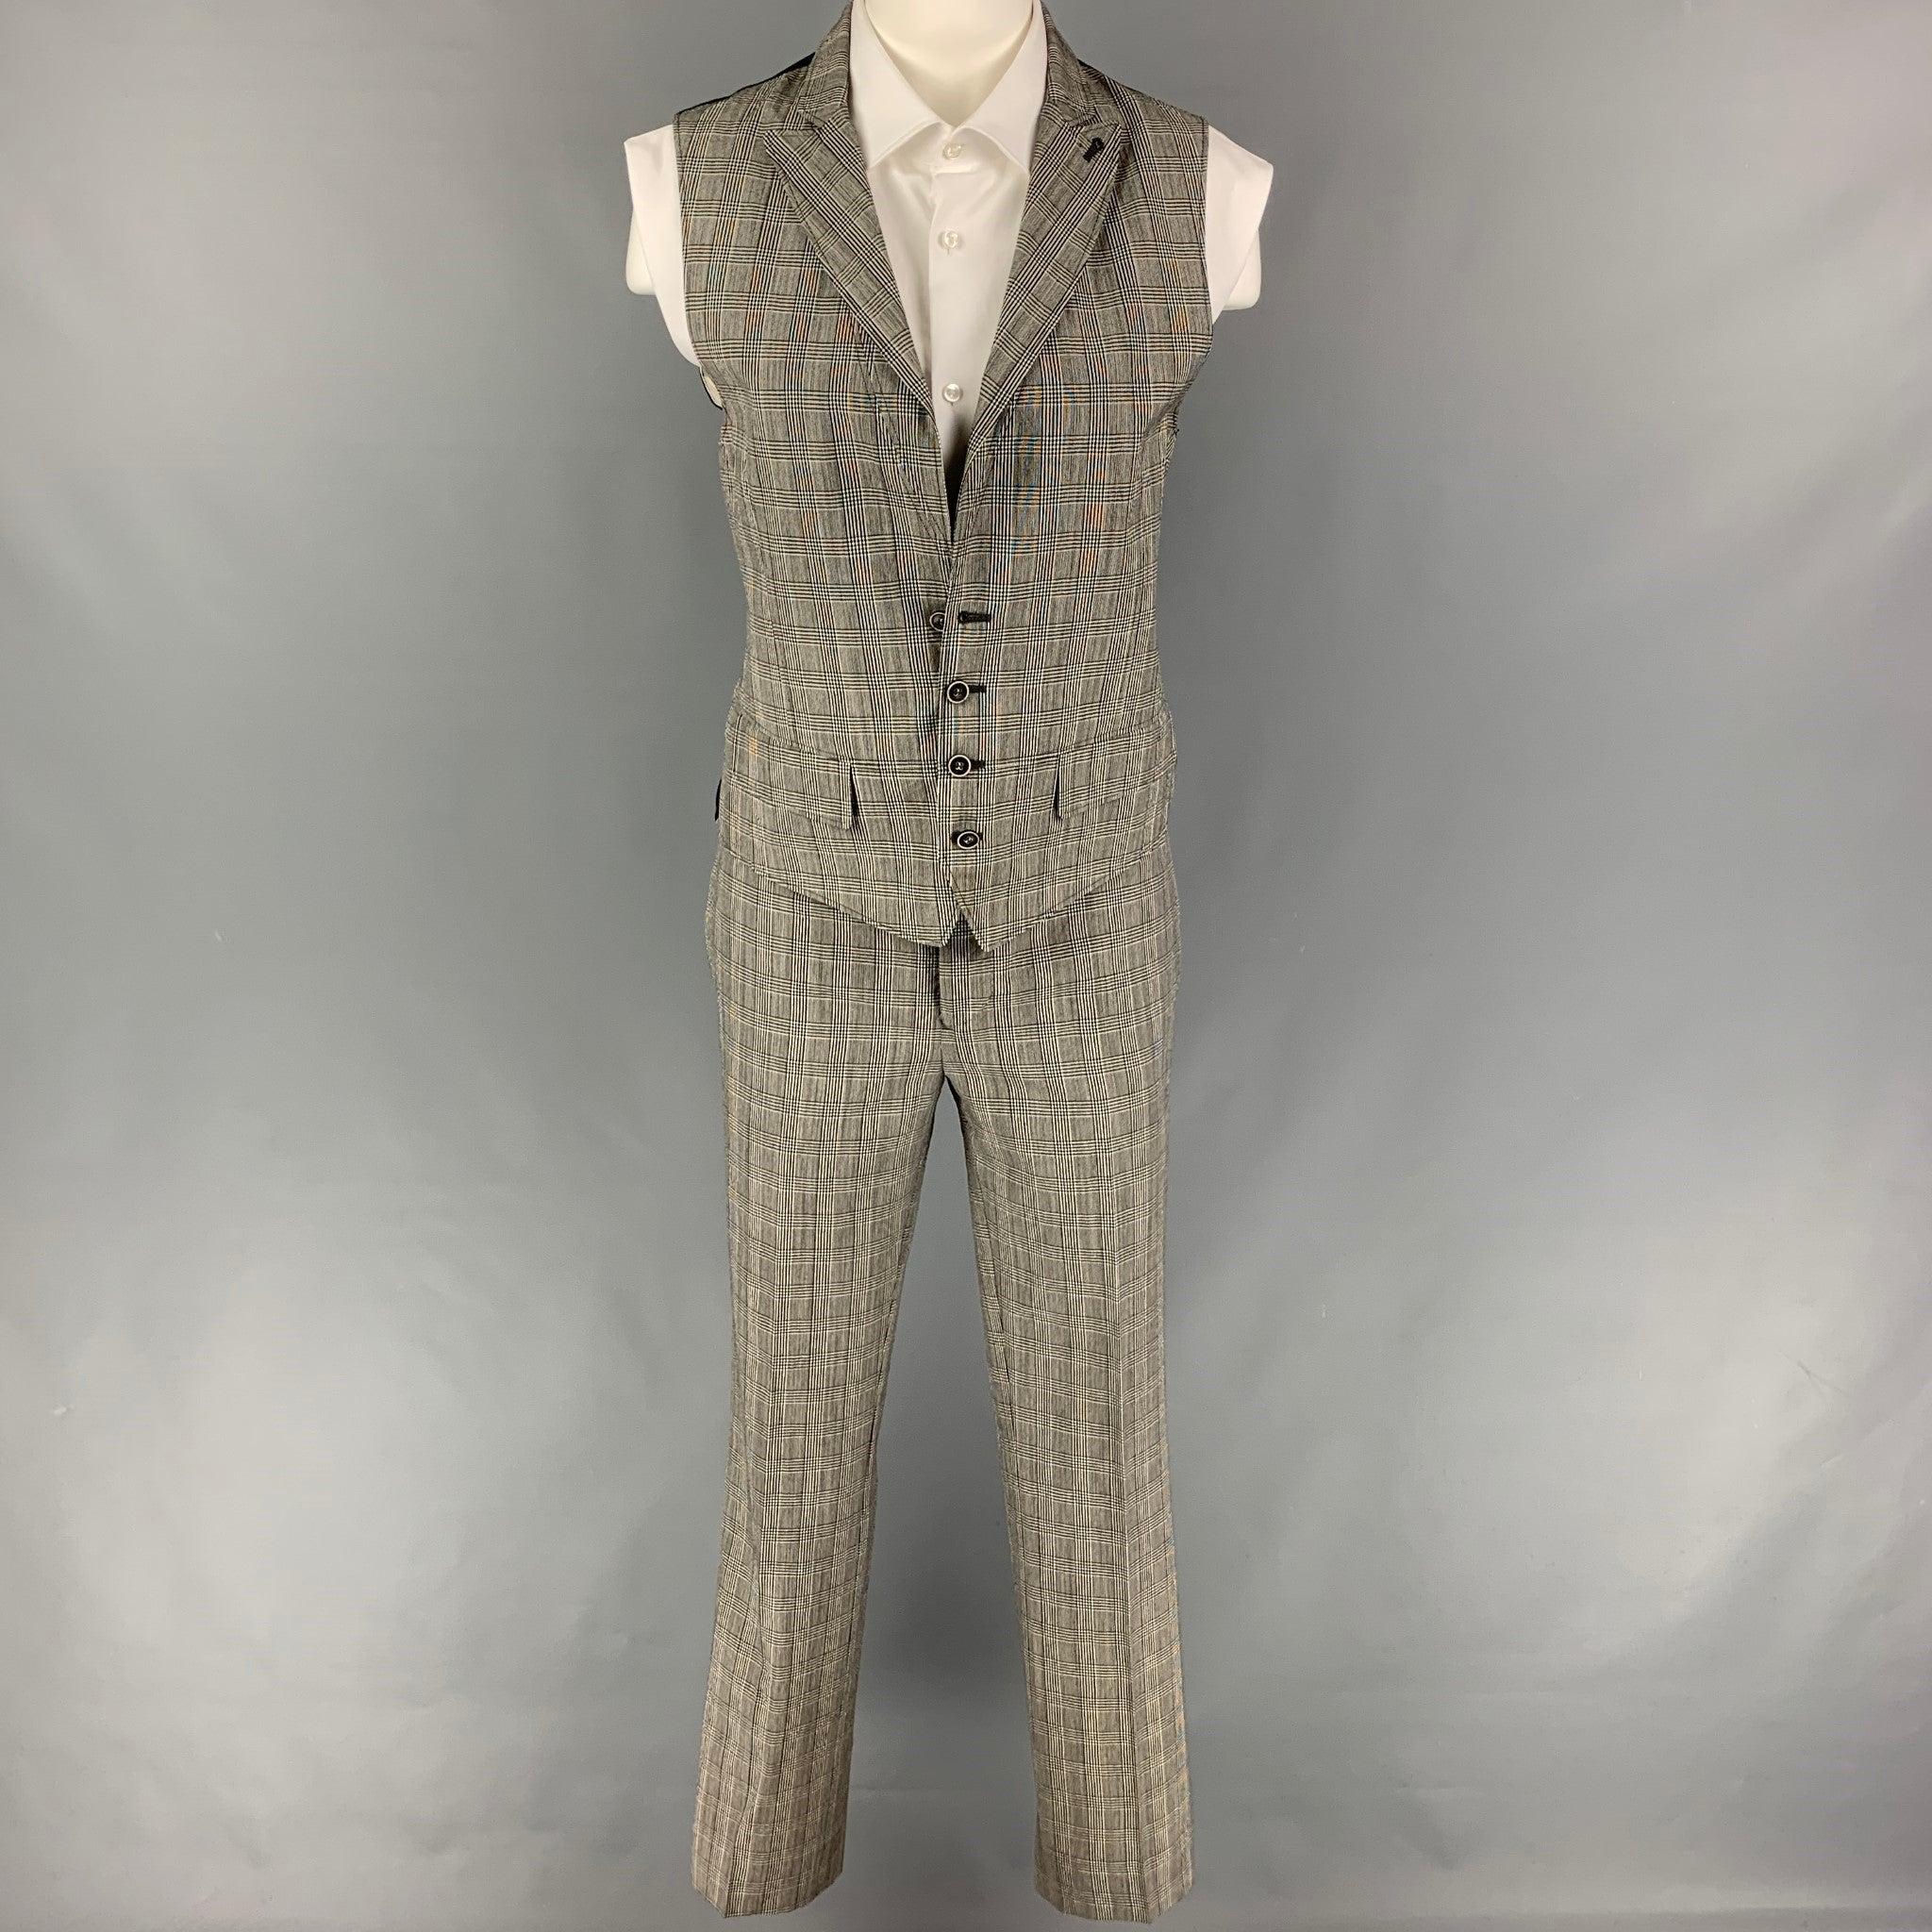 JOHN VARVATOS
Le costume est en laine glenplaid noire et blanche et comprend un gilet boutonné à simple boutonnage avec un revers en pointe et un pantalon assorti à devant plat. Fabriquées en Italie. Très bon état d'origine. 

Marqué :   46